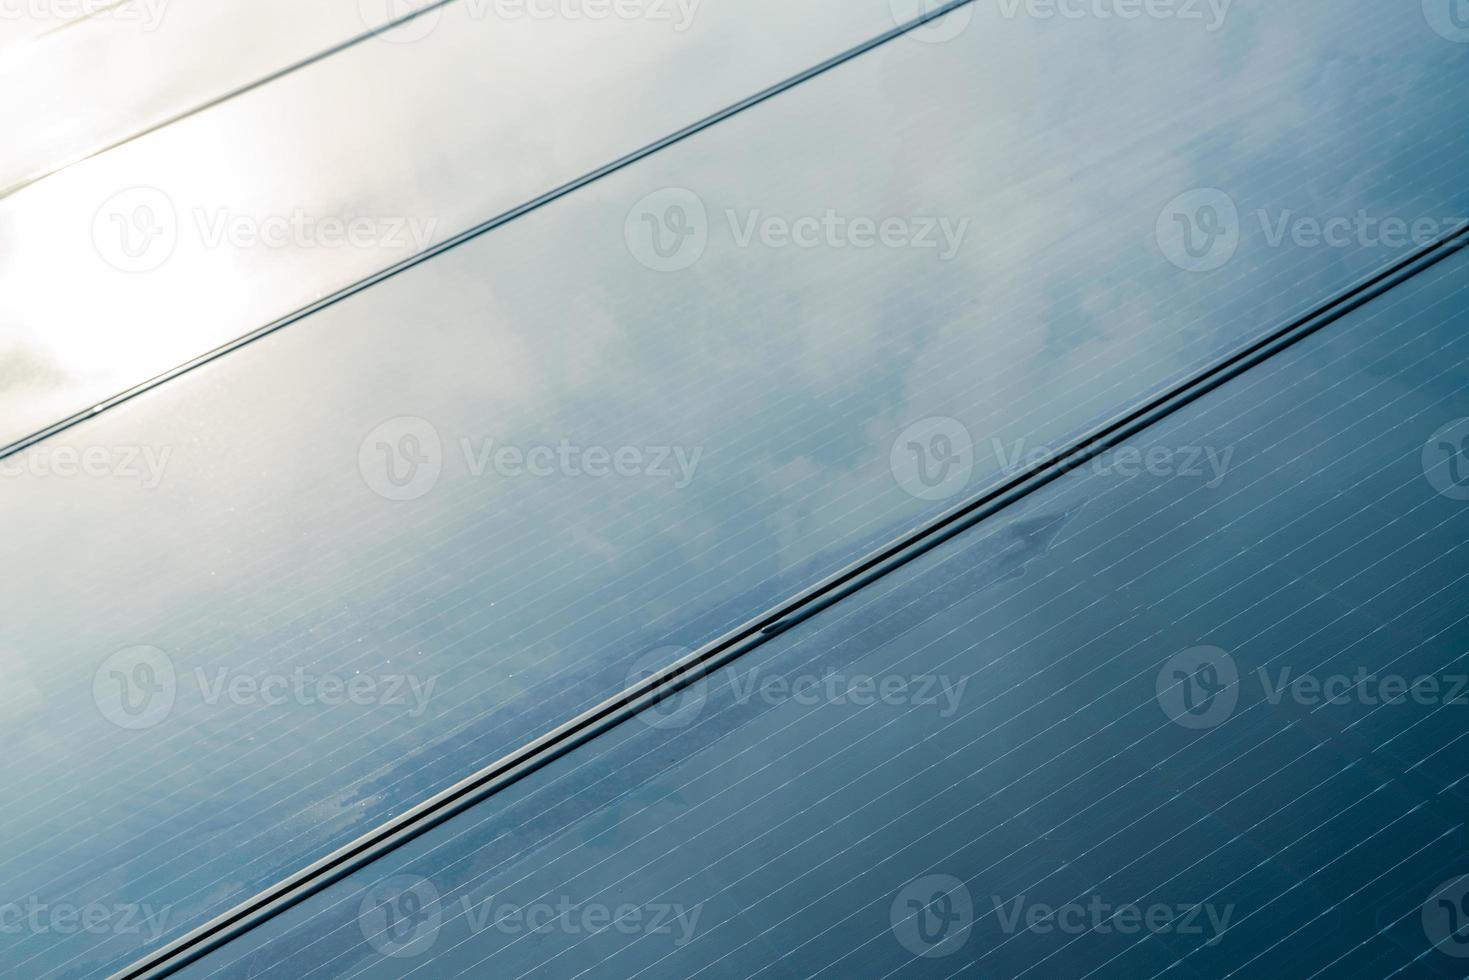 paneles solares o módulo fotovoltaico. energía solar para energía verde. recursos sostenibles. energía renovable. tecnología limpia. Los paneles de células solares utilizan la luz solar como fuente para generar electricidad. foto